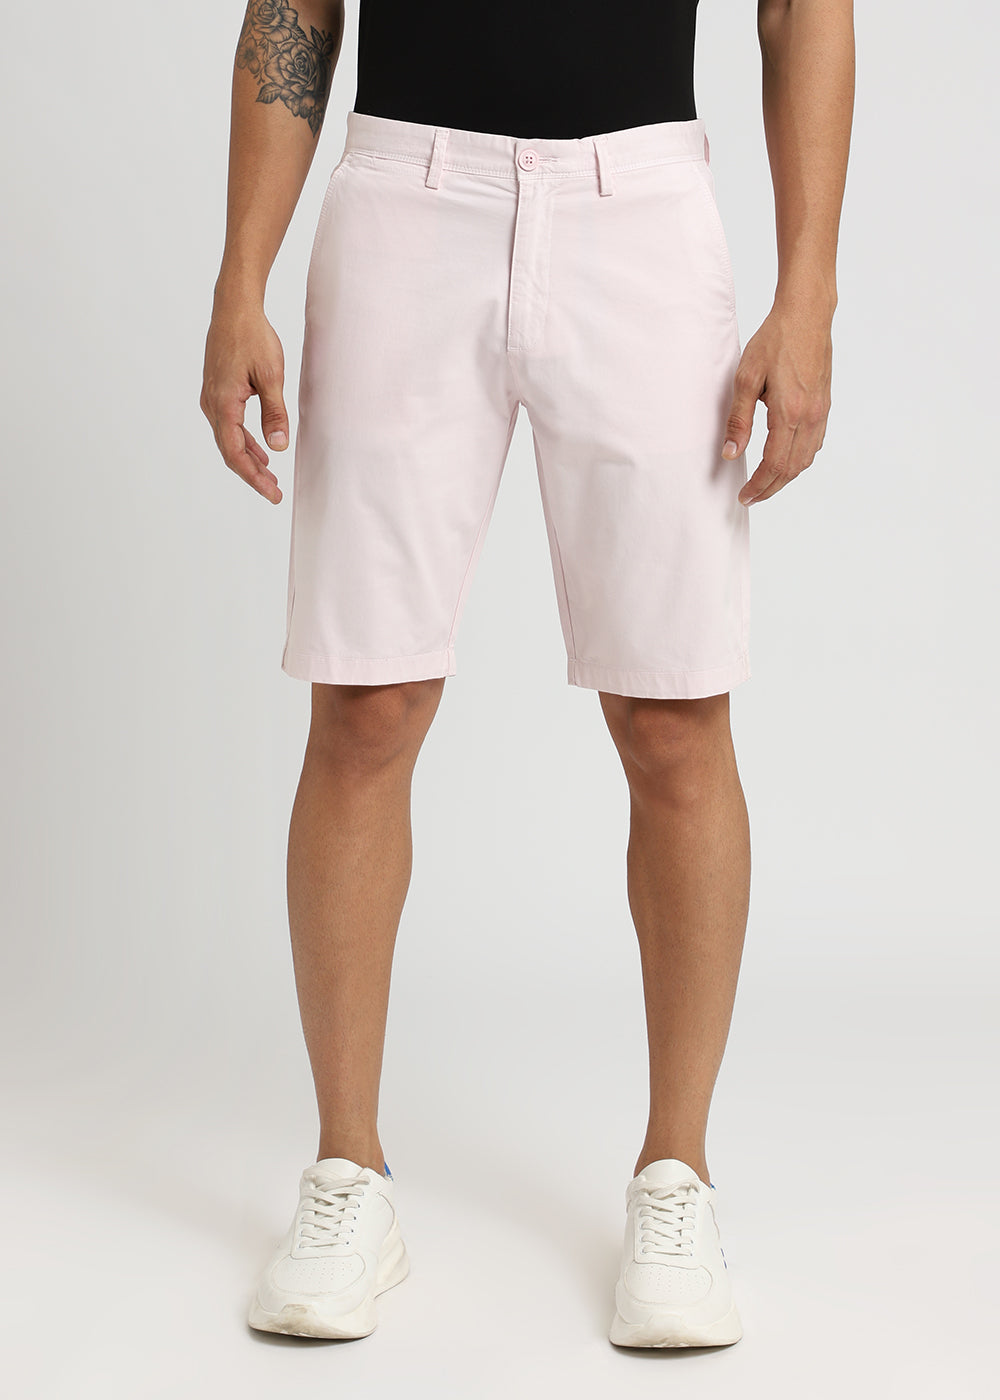 Pastel Pink Shorts